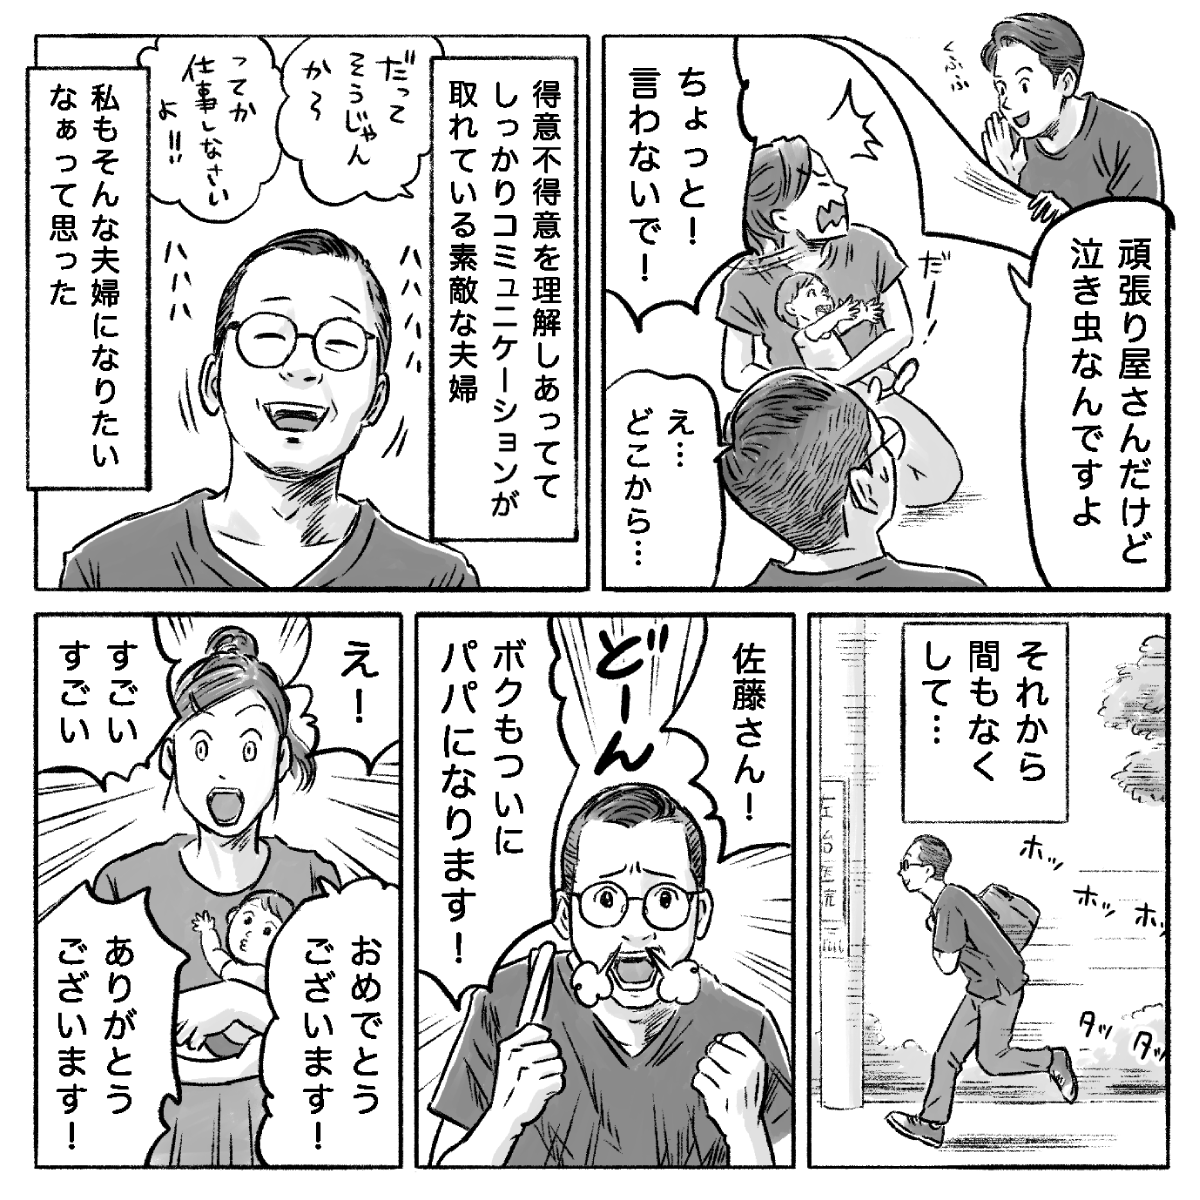 受賞作品漫画「担当看護師からパパママ友へ」9